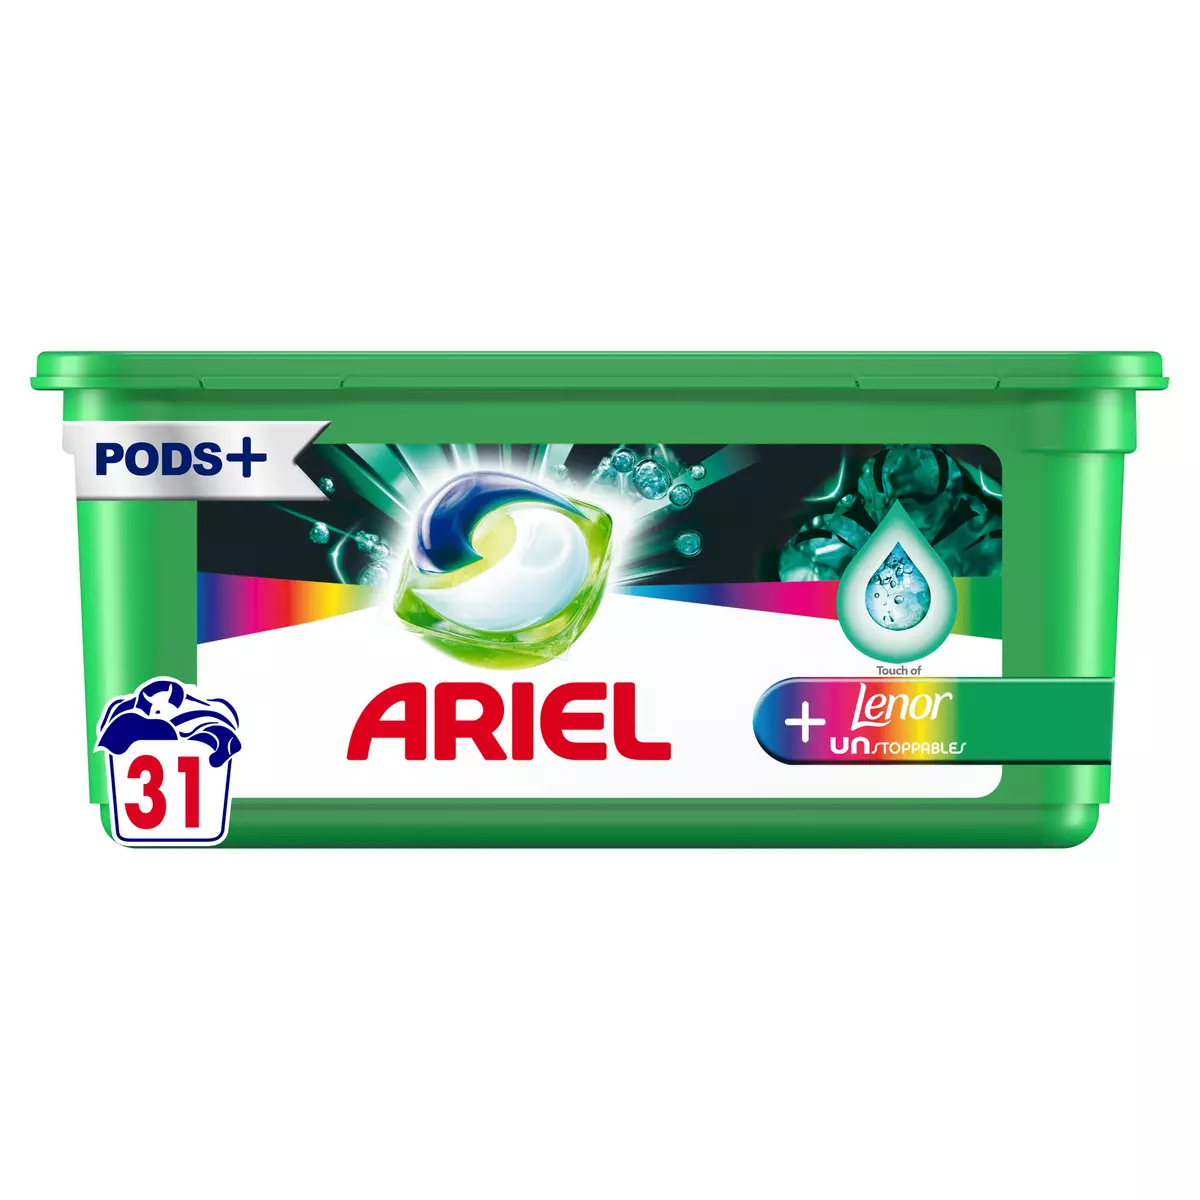 ARIEL Pods capsules de lessive + touche de lenor 31 capsules